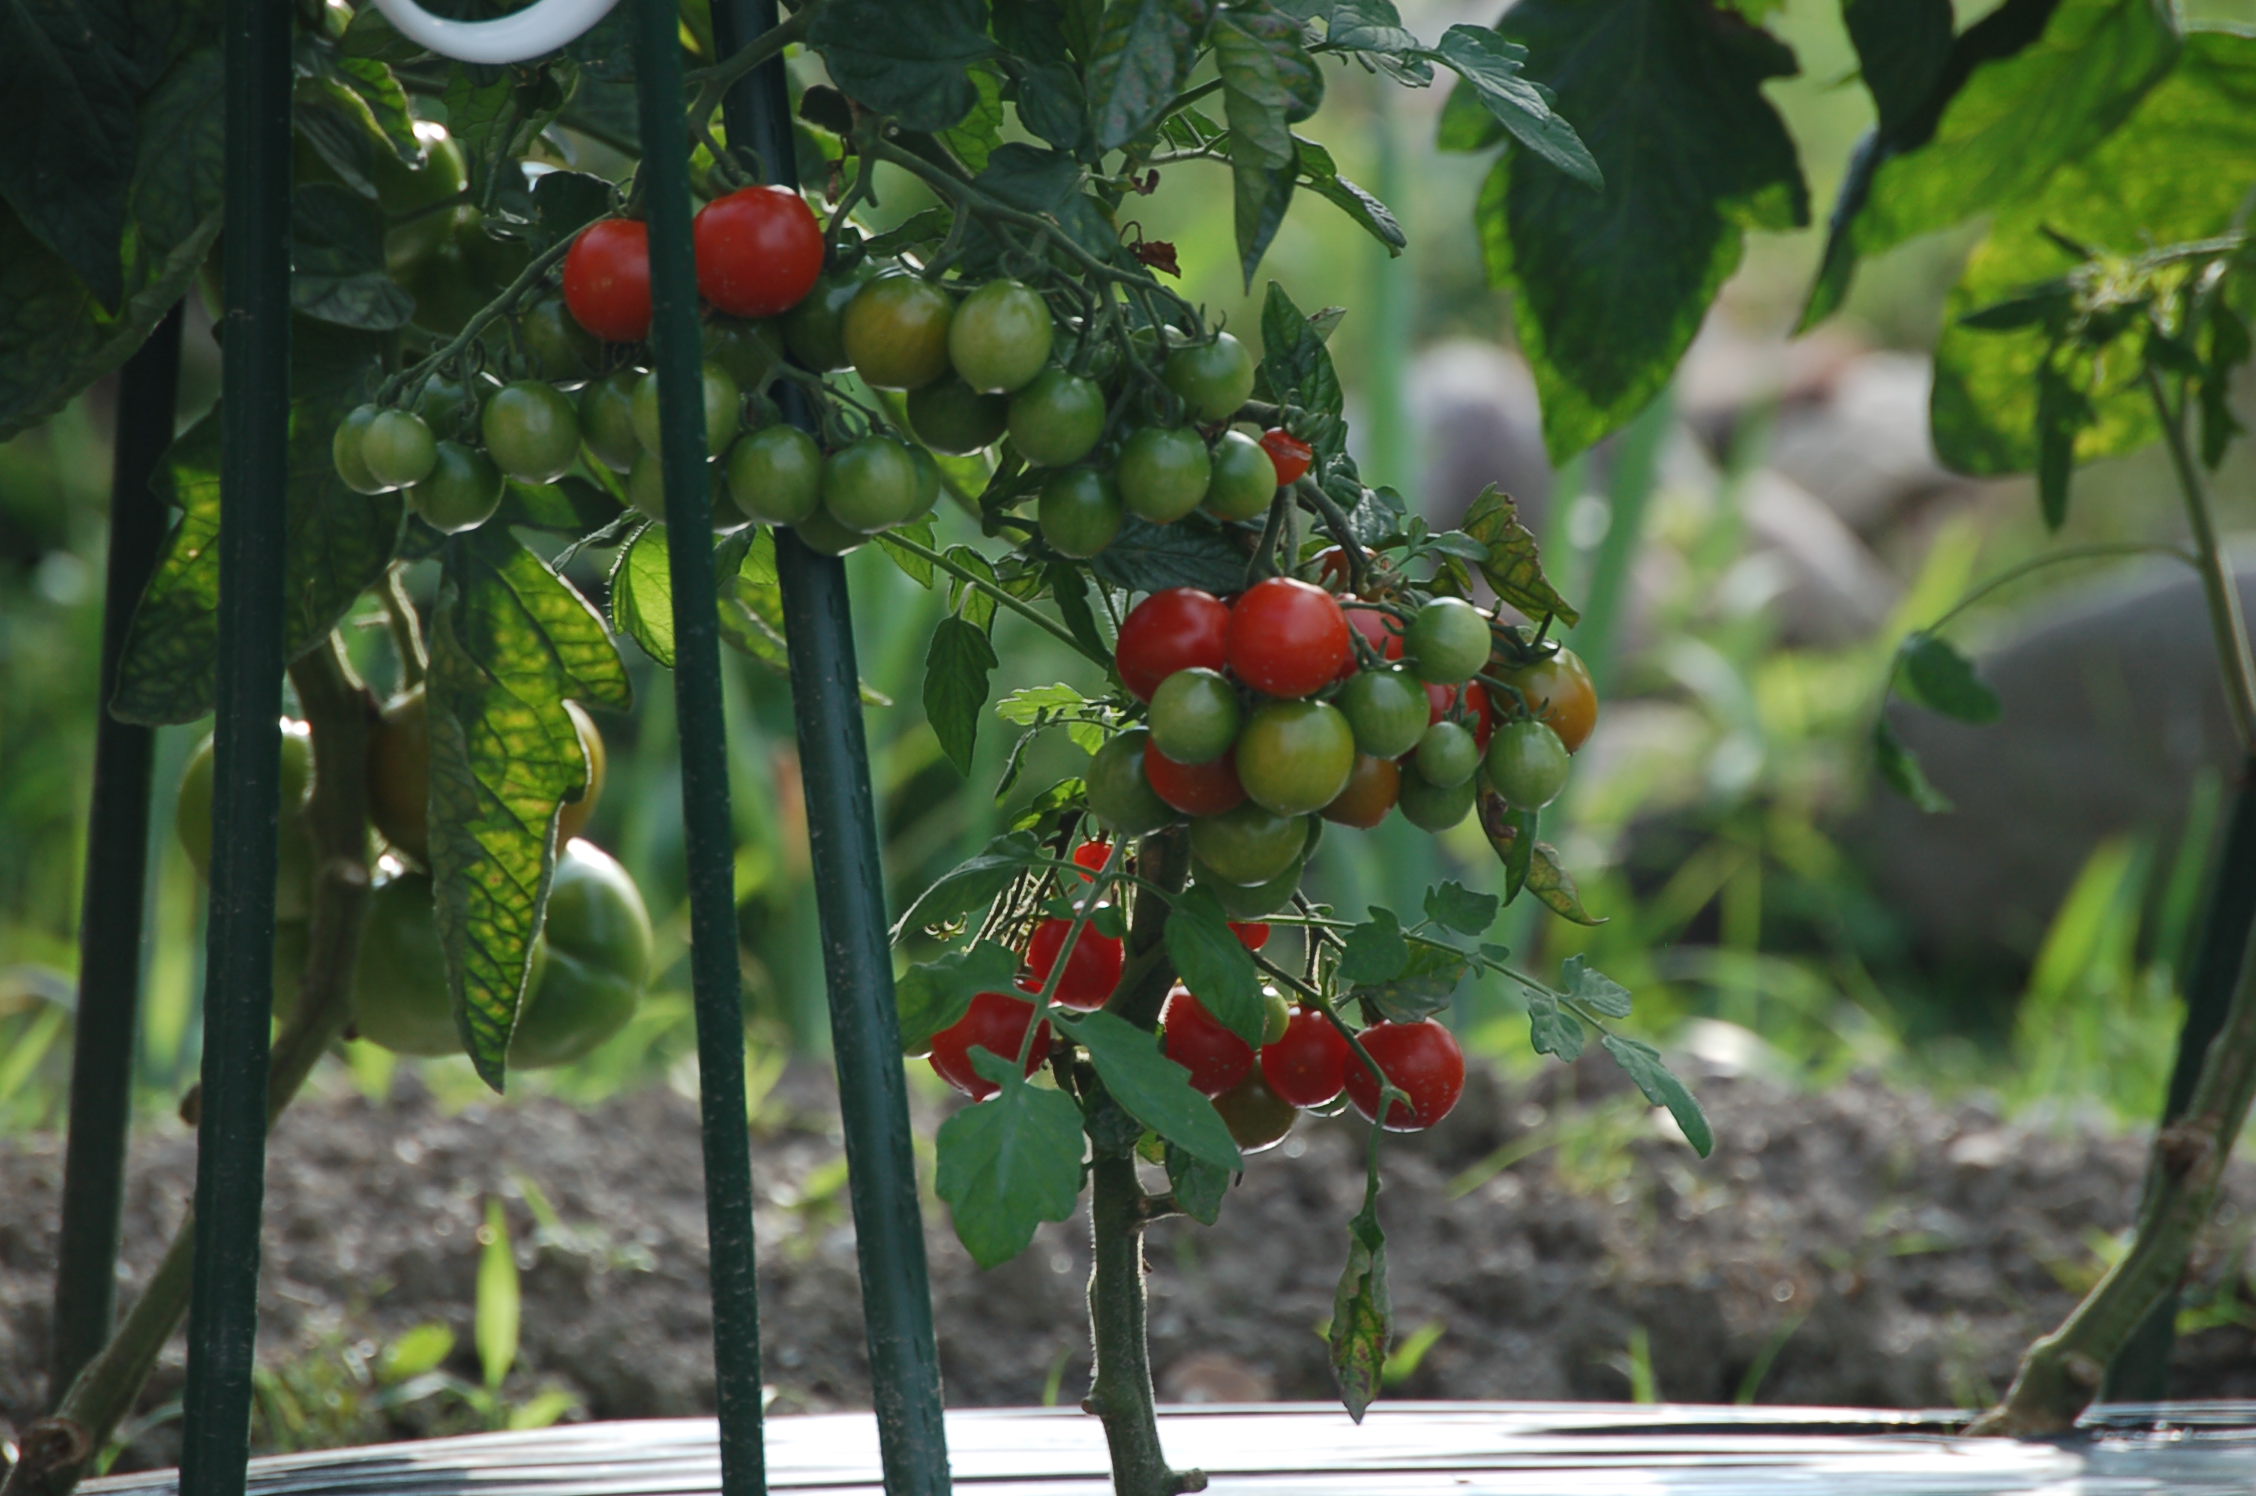 トマトの季節到来 アンプロムプテュ白馬オーナーブログ